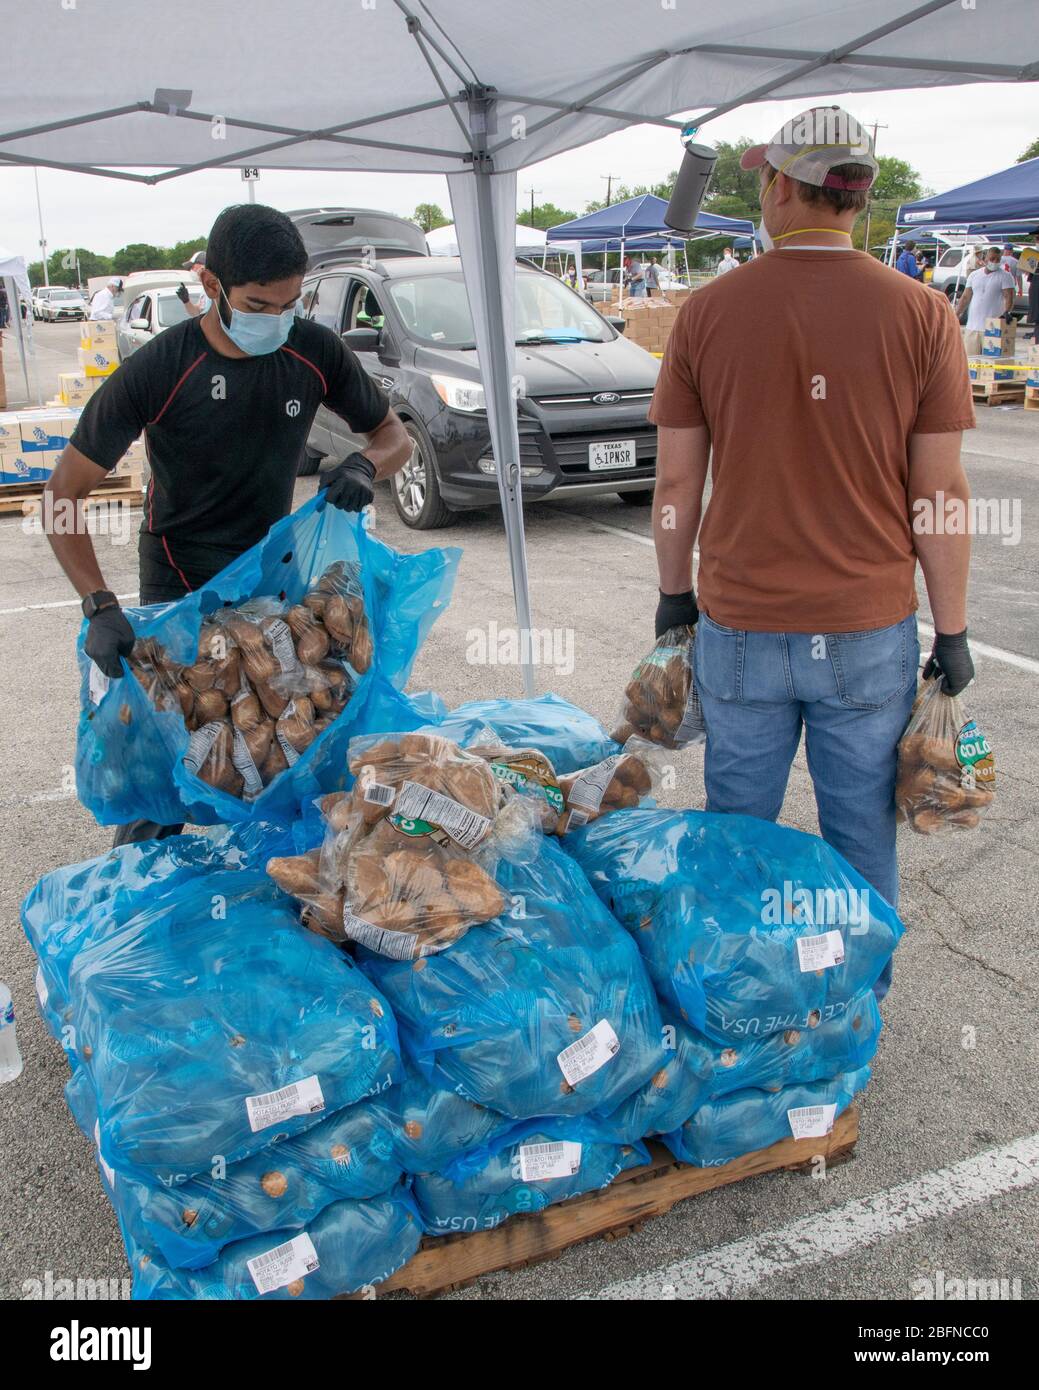 El Servicio de Alimentos y Nutrición del USDA y el Banco de Alimentos de San Antonio distribuyen ayuda alimentaria a las familias que sufren los efectos de la pandemia del coronavirus COVID-19 en el Alamodome el 17 de abril de 2020 en San Antonio, Texas. Foto de stock